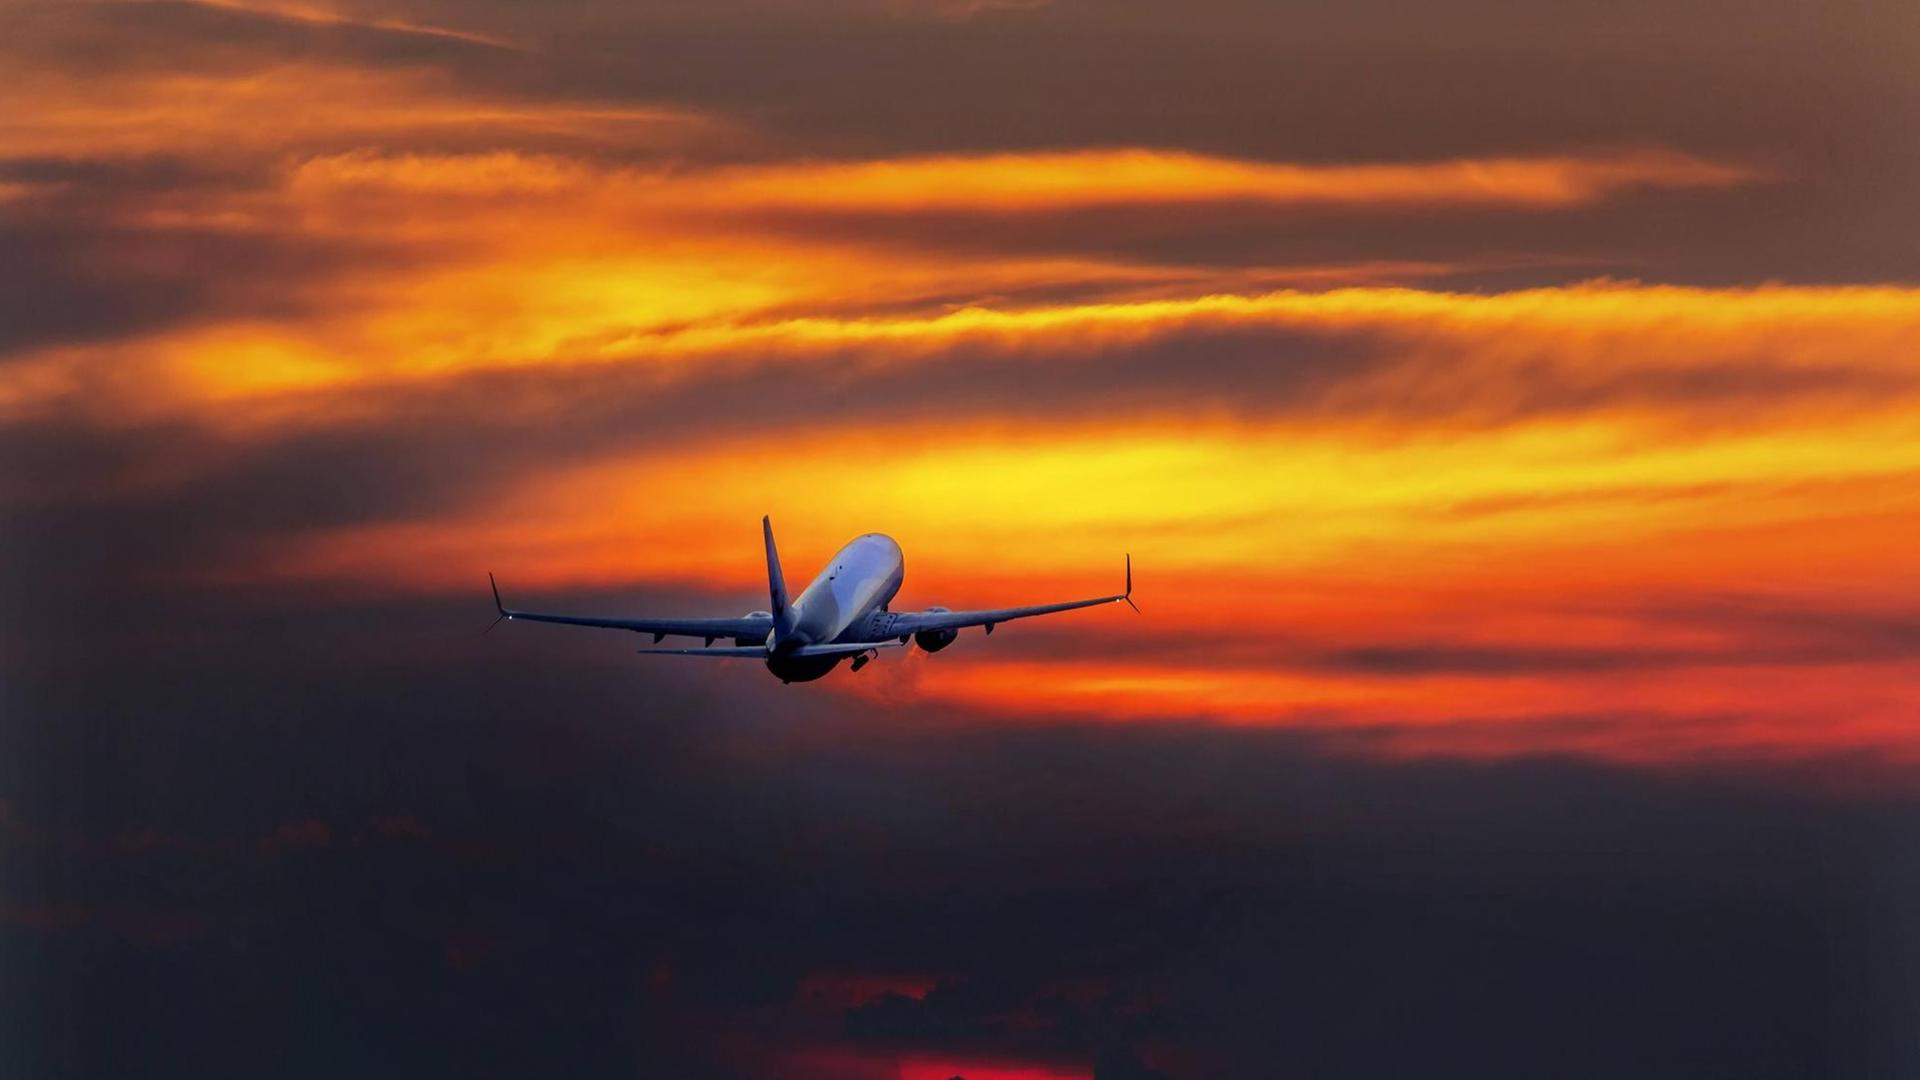 Reisen - Preise für Flüge in diesem Sommer spürbar angestiegen